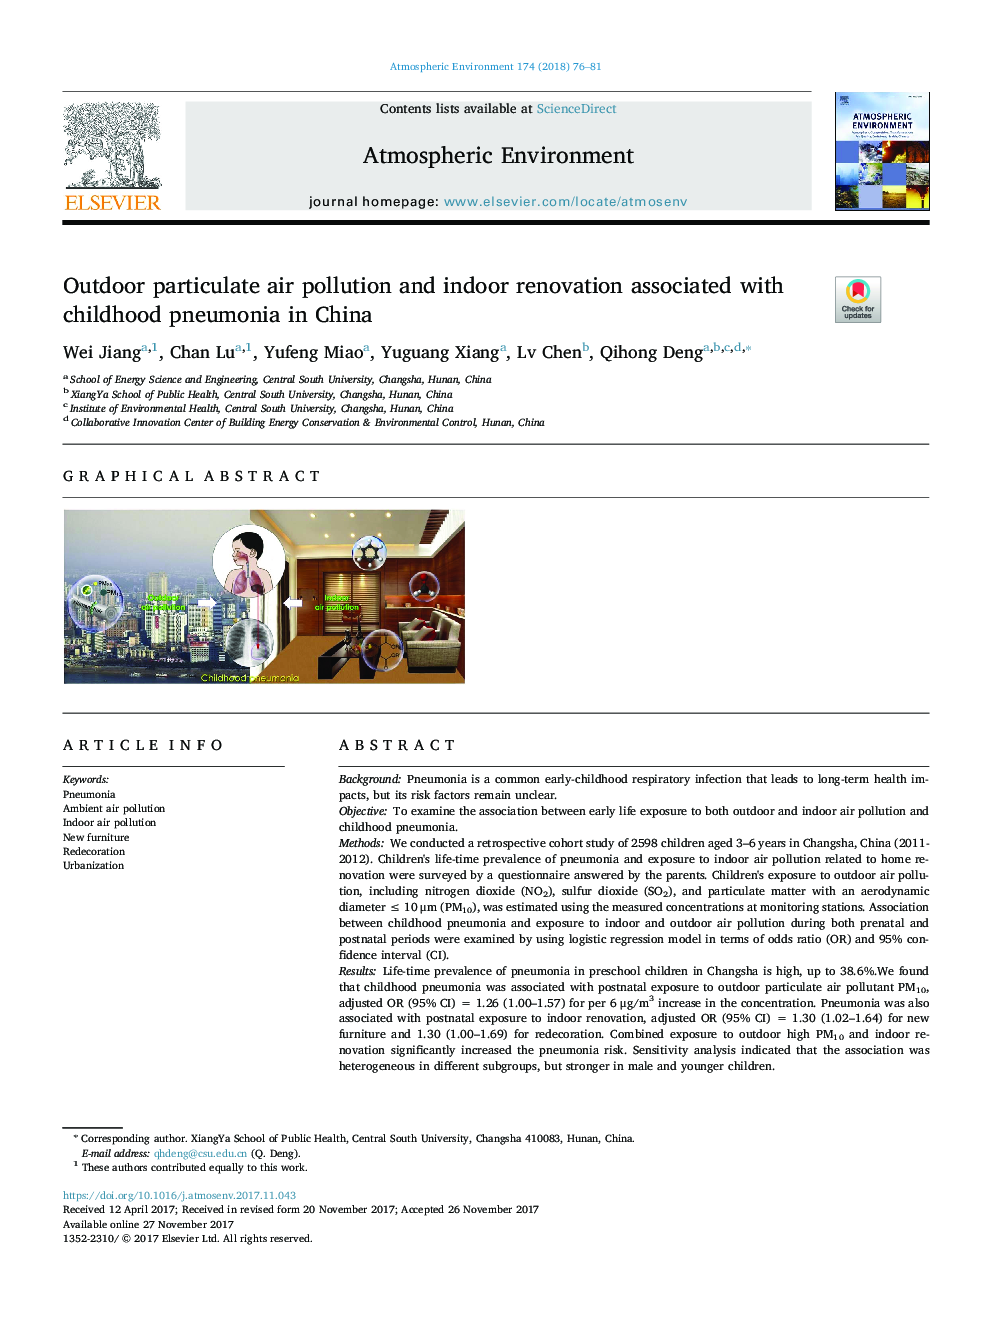 آلودگی هوا در داخل فضای باز و بازسازی داخلی در ارتباط با پنومونی دوران کودکی در چین 